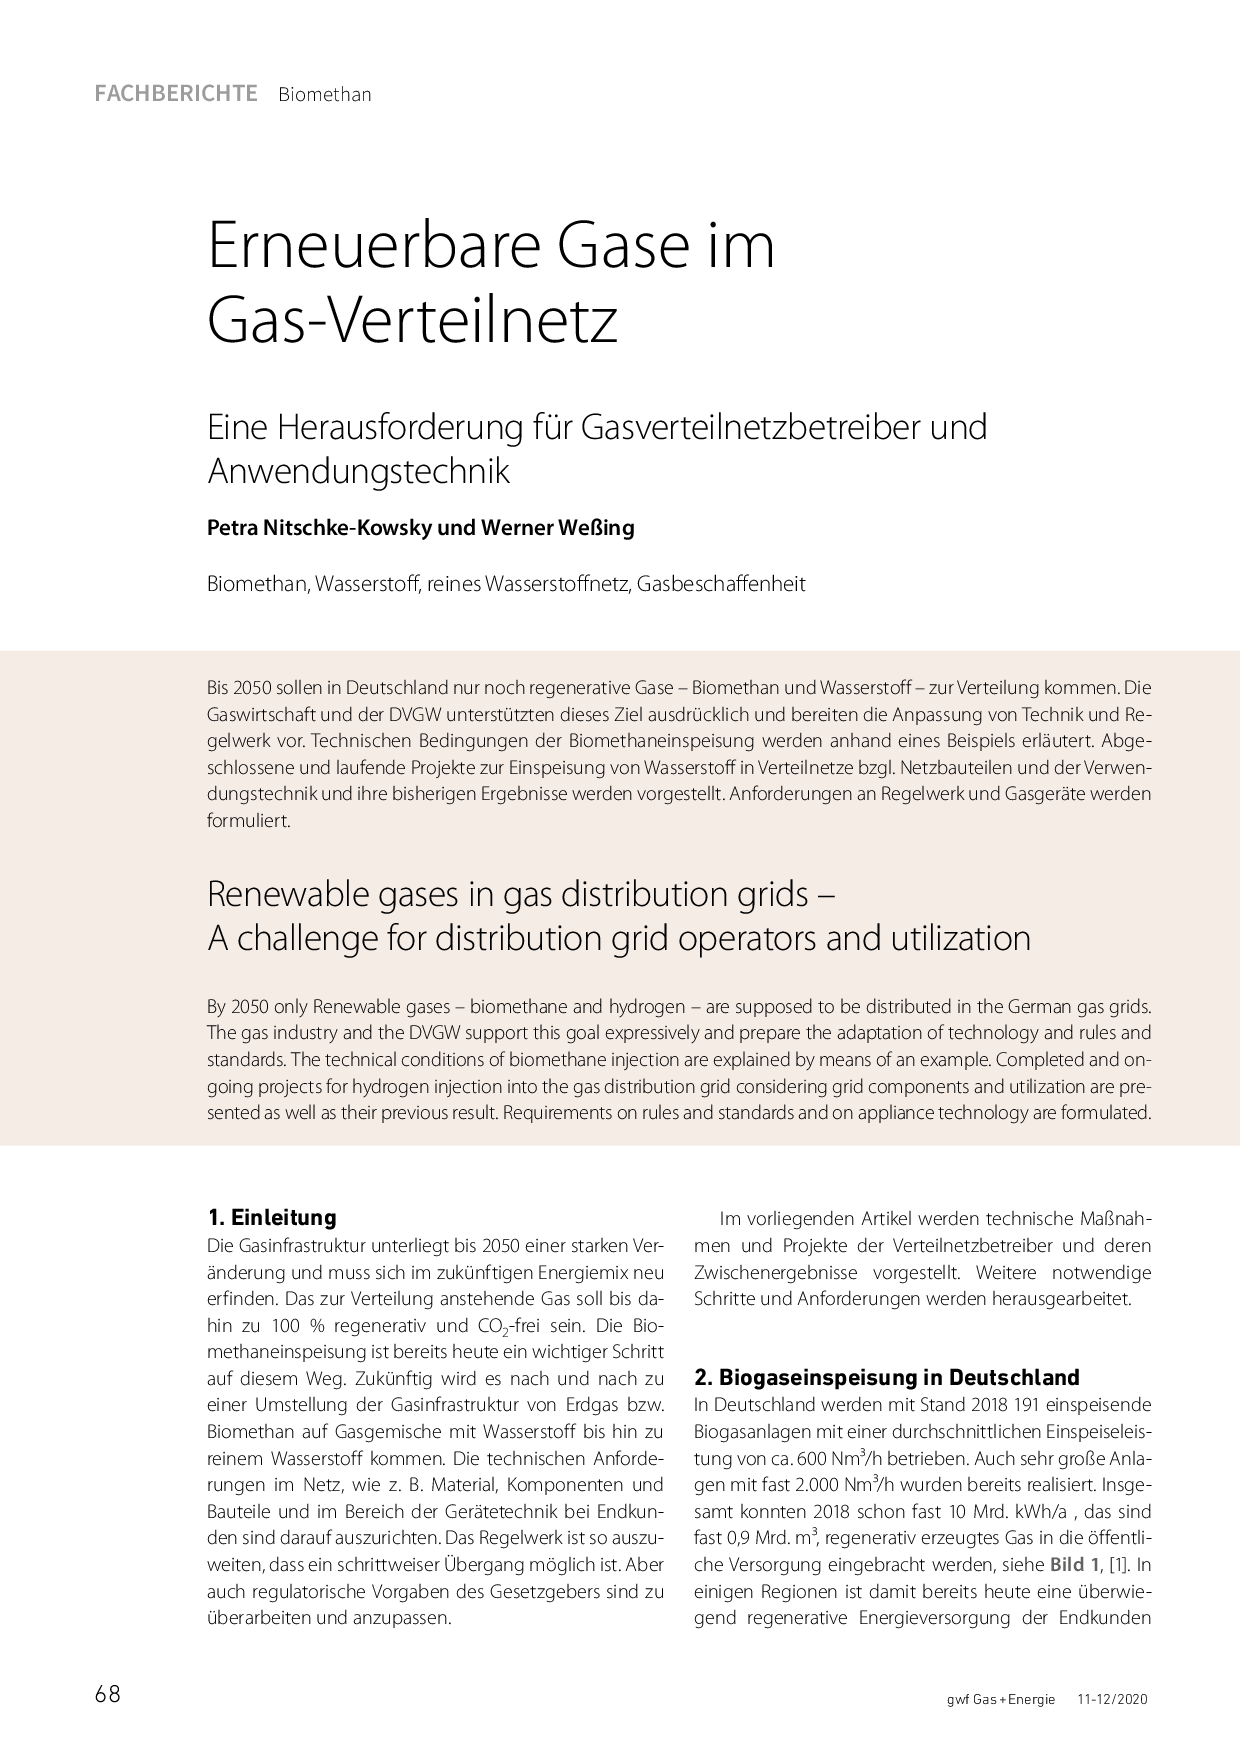 Erneuerbare Gase im Gas-Verteilnetz